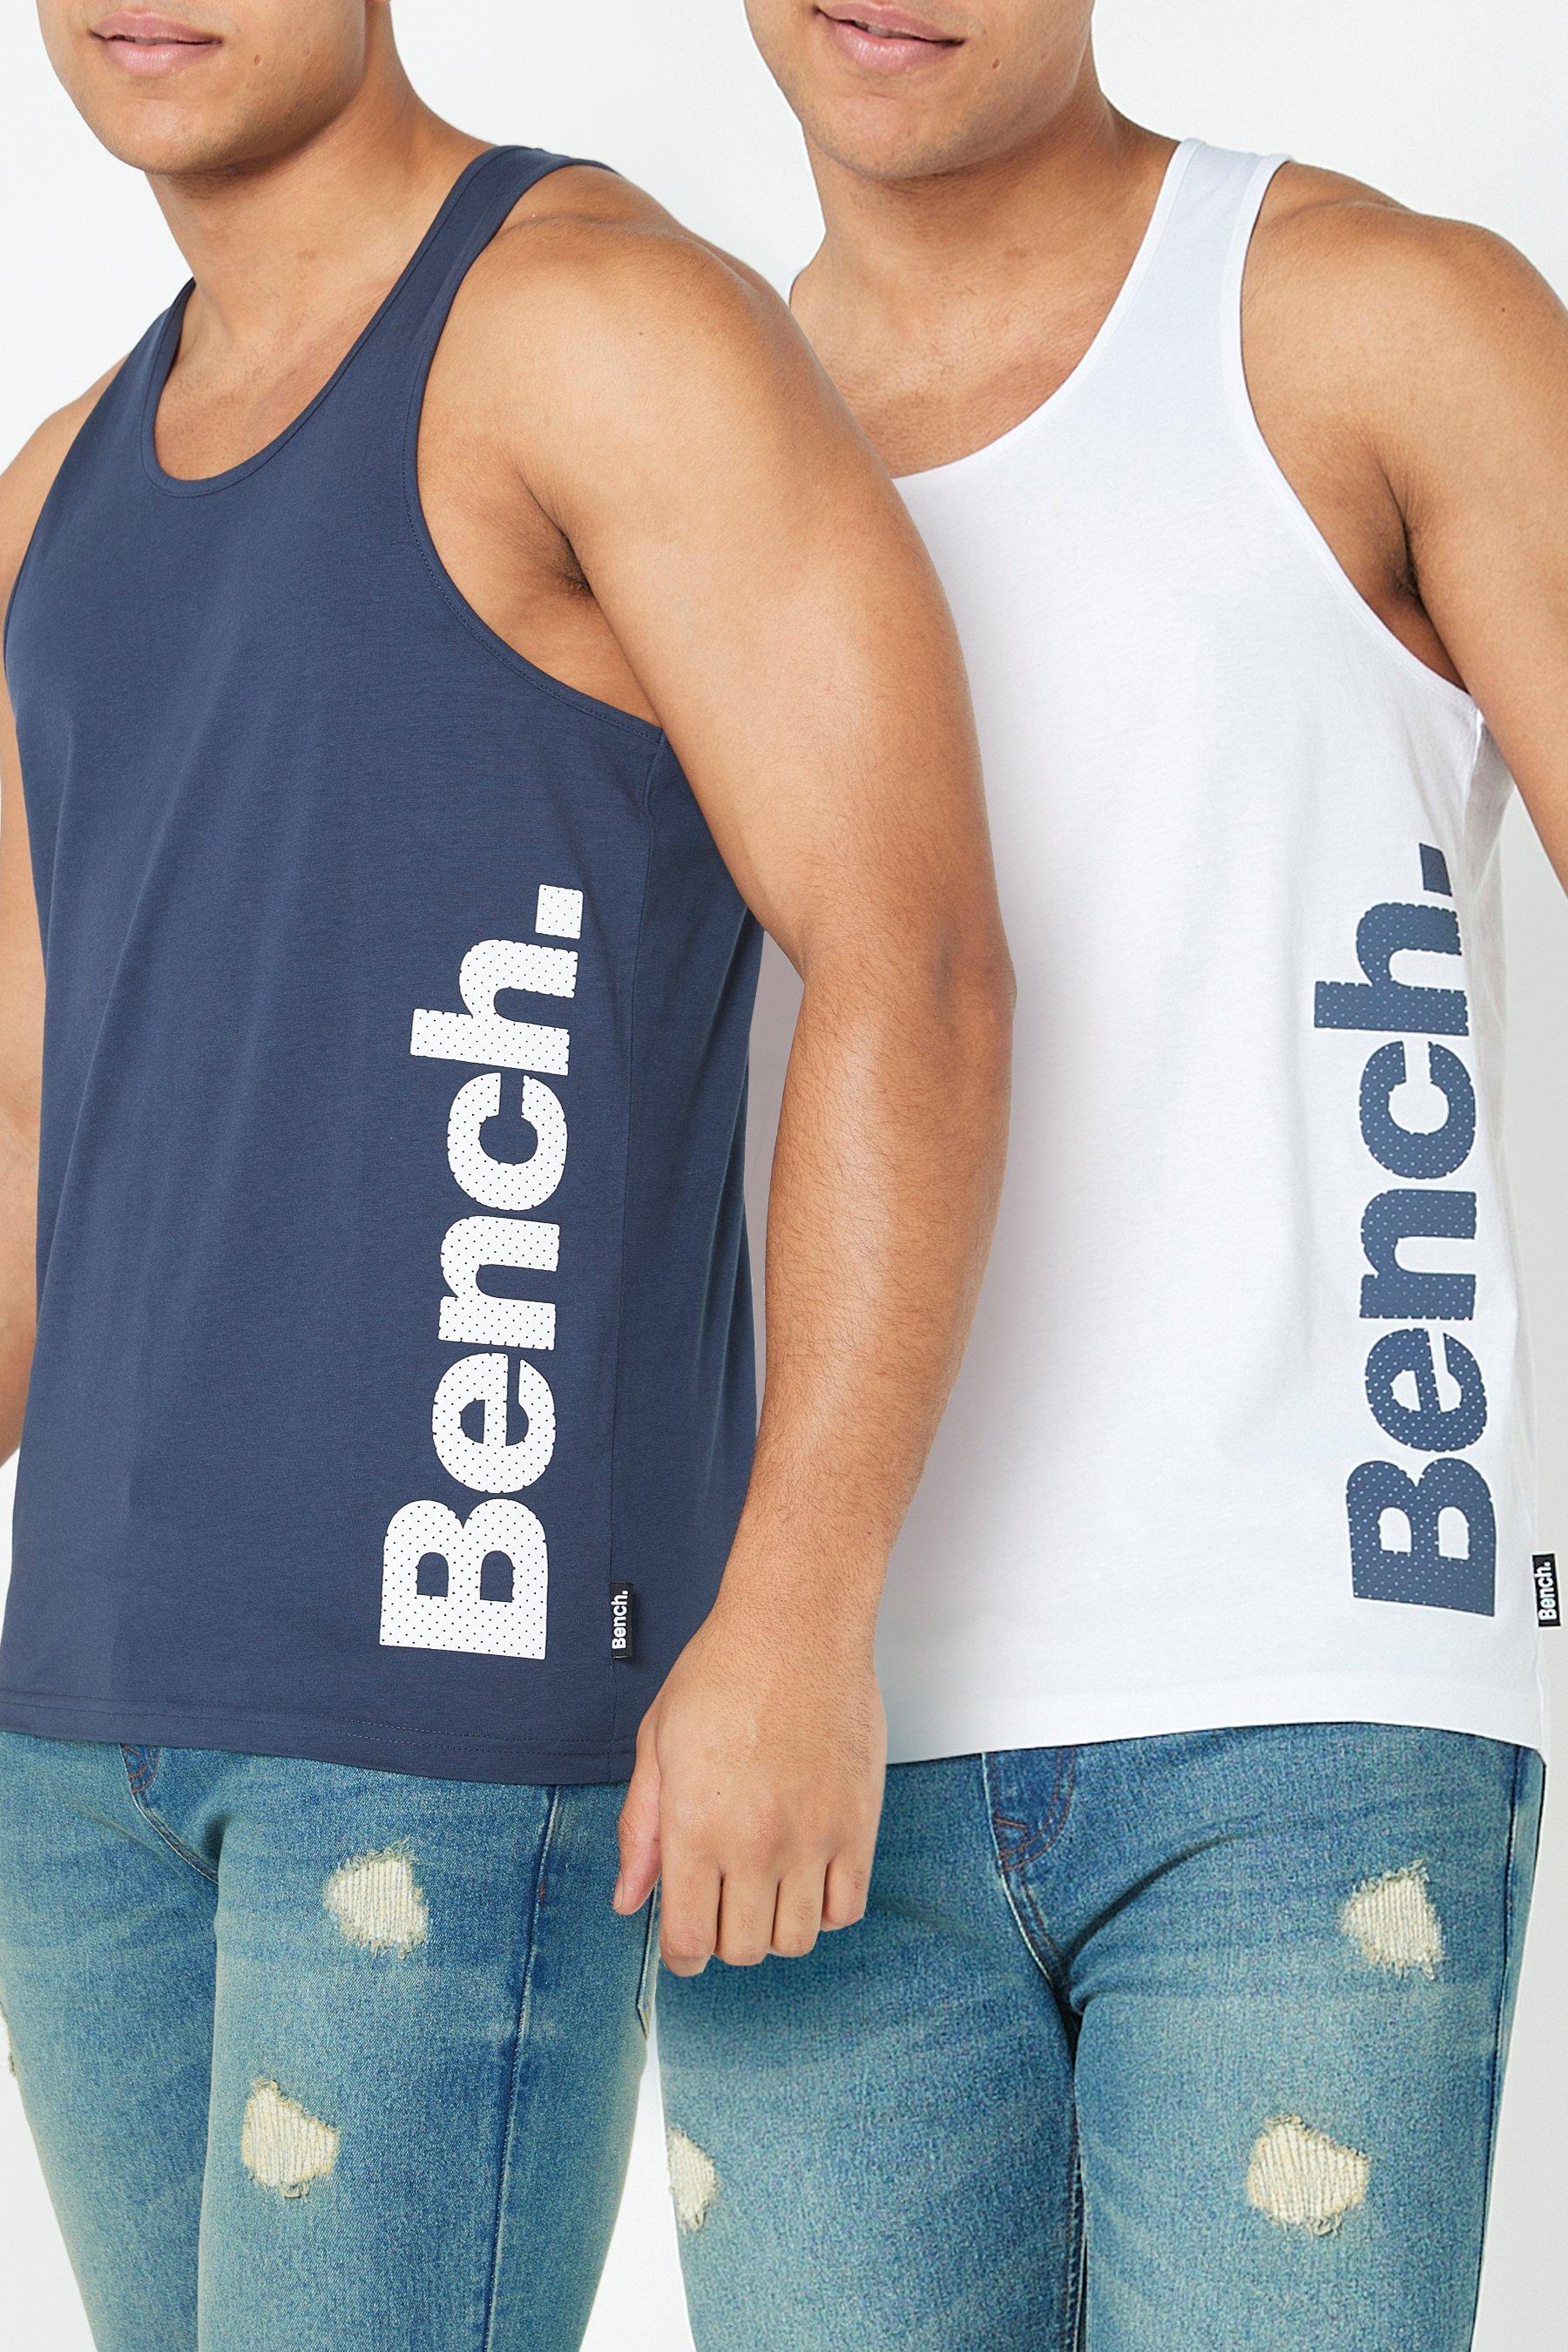 of Branding Vertical | Bench Pack 2 Studio Vests